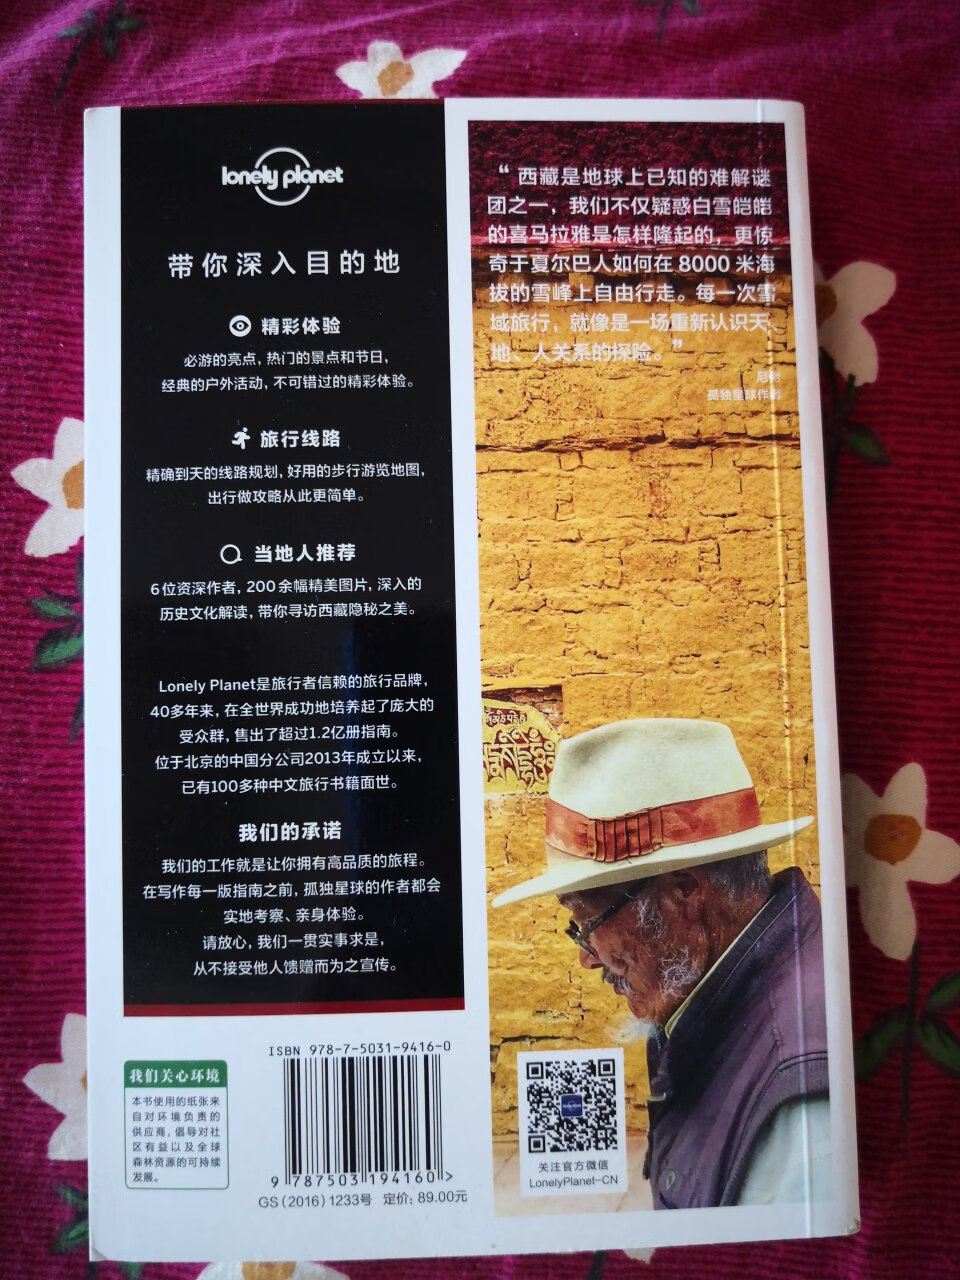 之前断货现在终于到手了，自从买了第一本内蒙古就一发不可收拾，孤独星球内容丰富印刷精良，出行很好的参考书，做做功课明年西藏自驾准备。